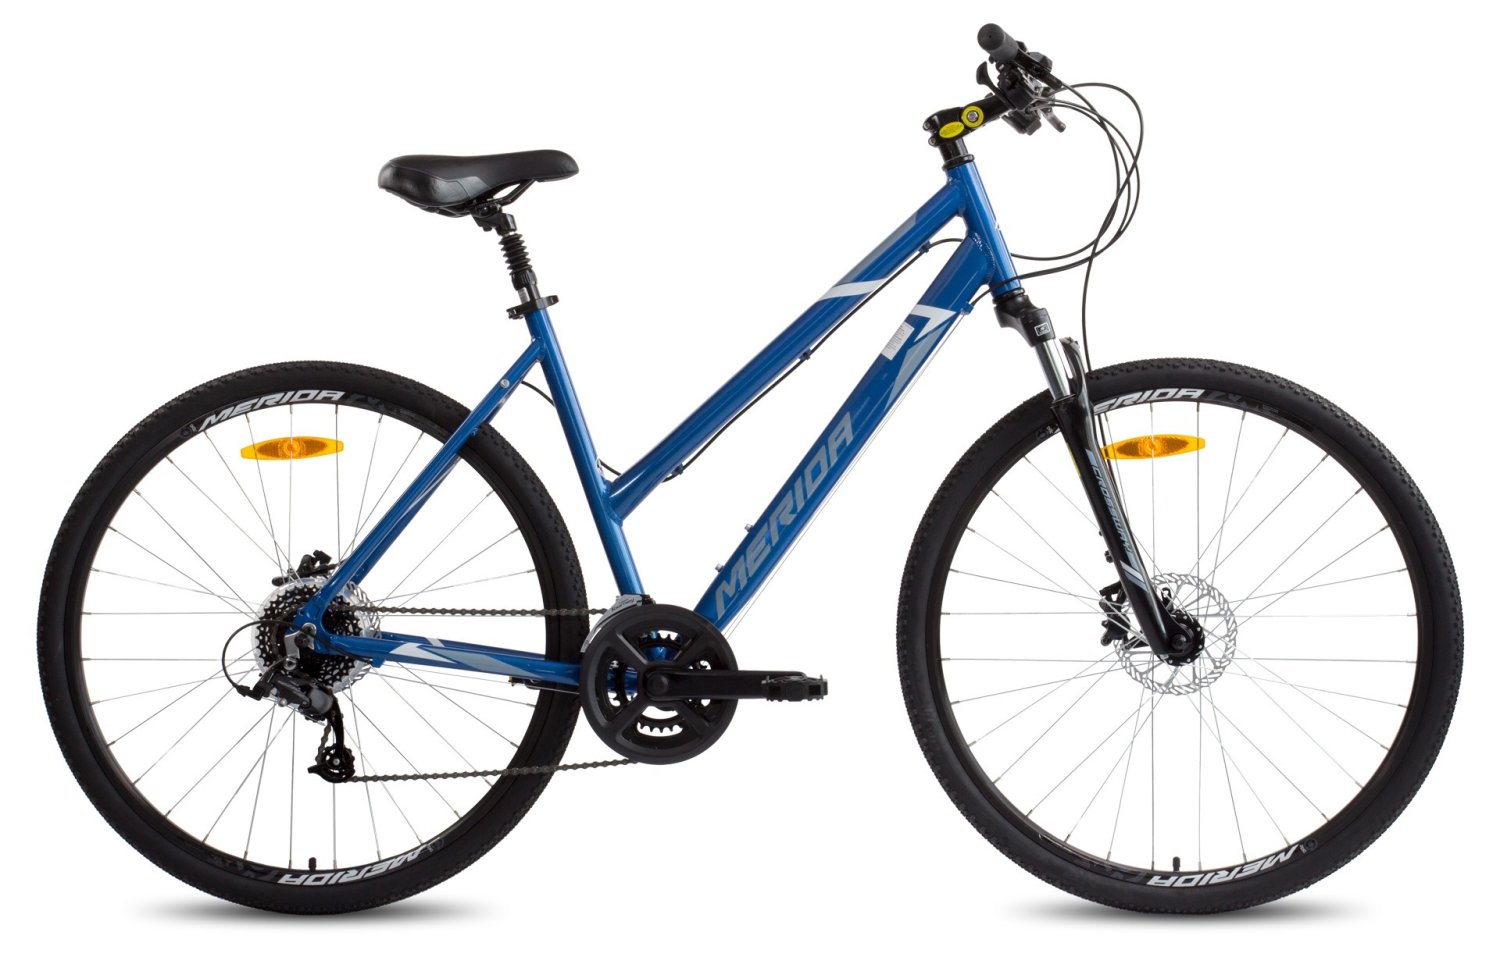 Велосипед Merida Crossway 10 lady Рама:XS(43cm) Blue/WhiteGray